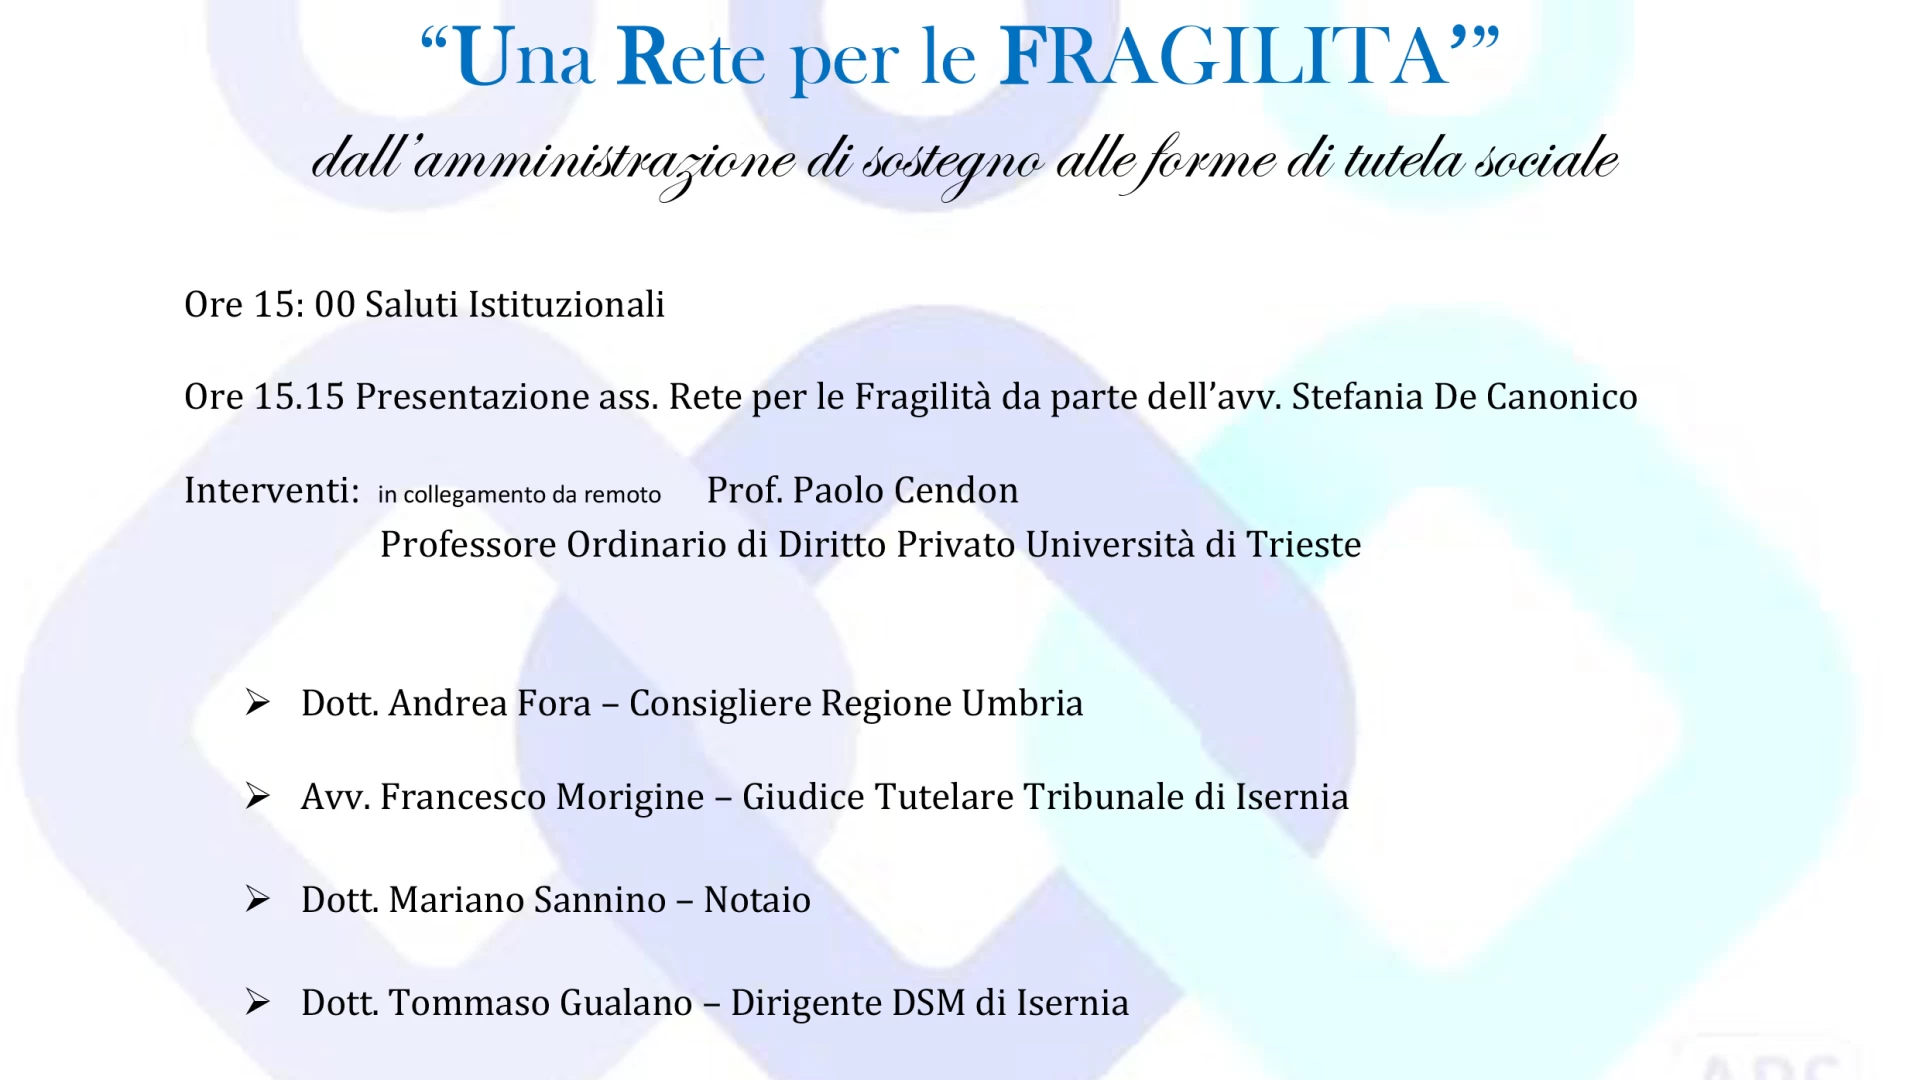 Isernia: “UNA RETE PER LE FRAGILITA’”. Appuntamento venerdì 22 settembre presso l’ex Seminario di via Mazzini.